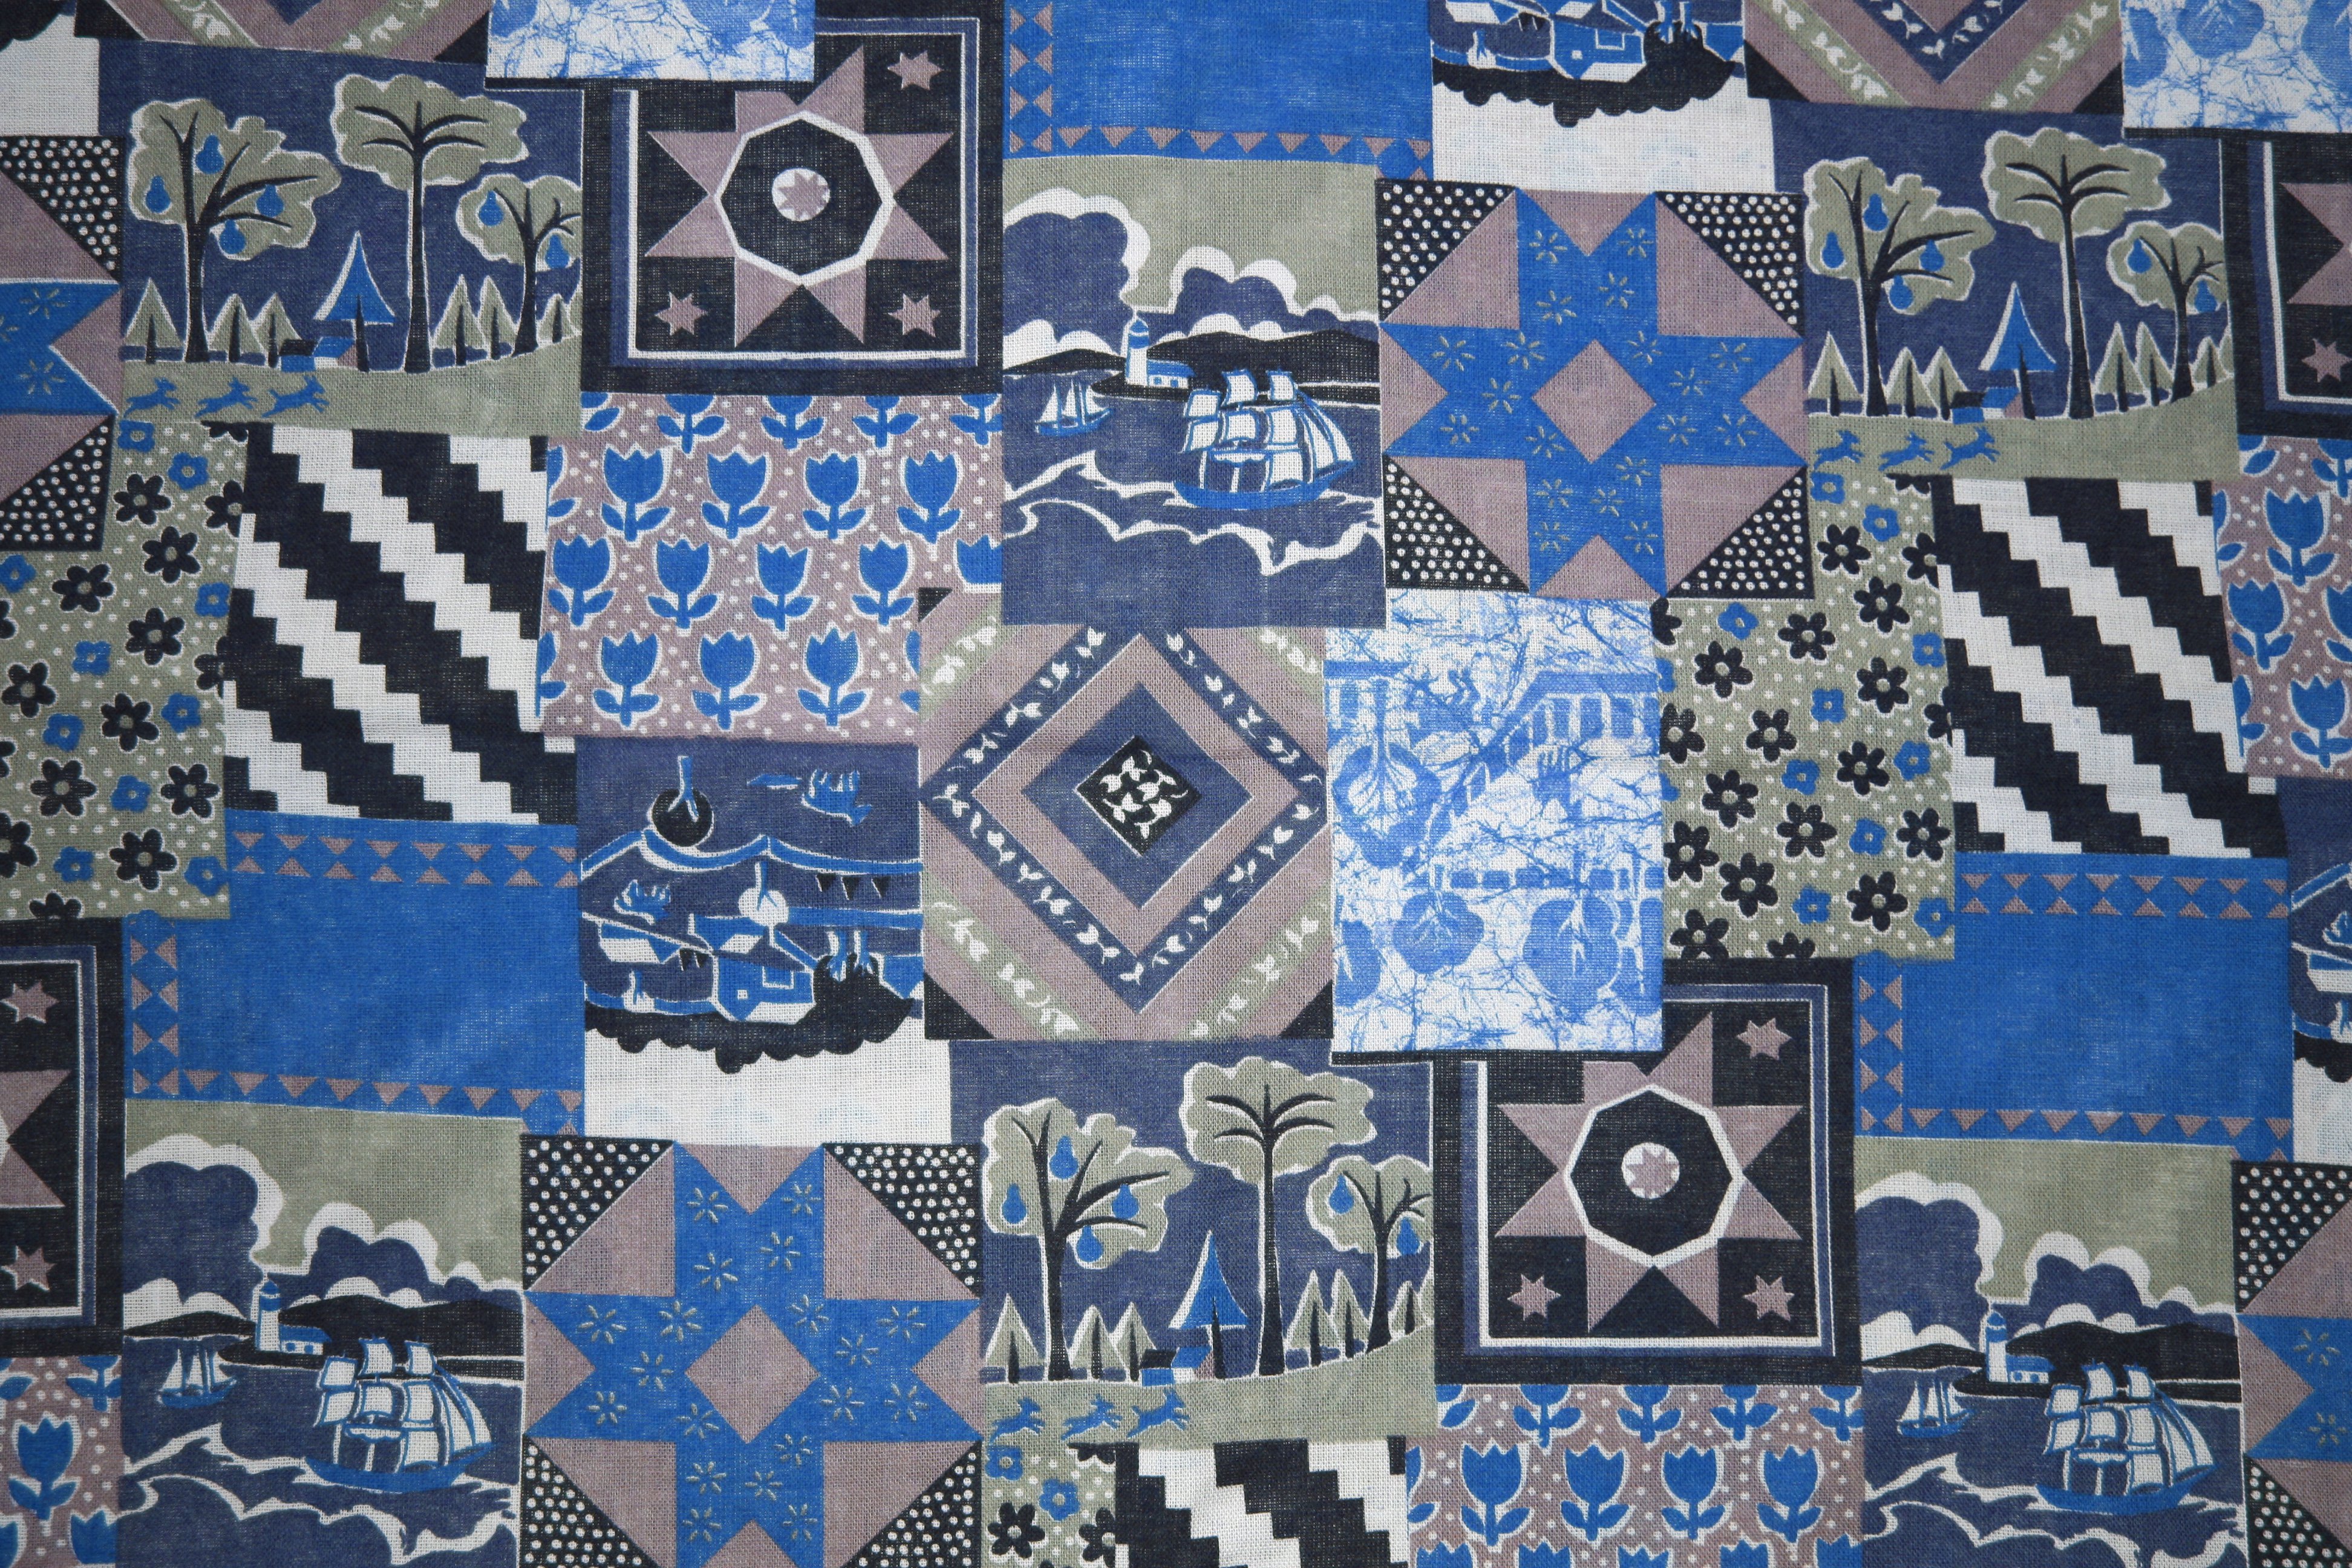 Blue Patchwork Quilt Fabric Texture Picture Photograph Photos